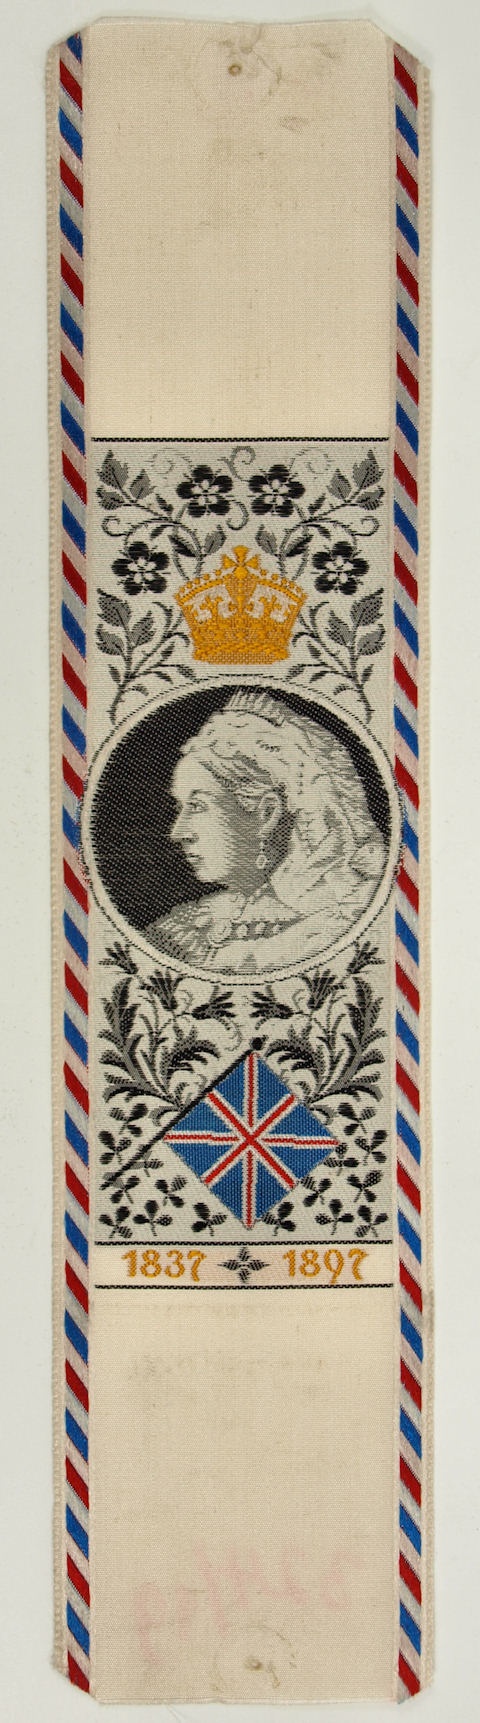 Vivatband anlässlich des sechzigjährigen Thronjubiläums von Königin Victoria, England 1897 (Museum Weißenfels - Schloss Neu-Augustusburg CC BY-NC-SA)